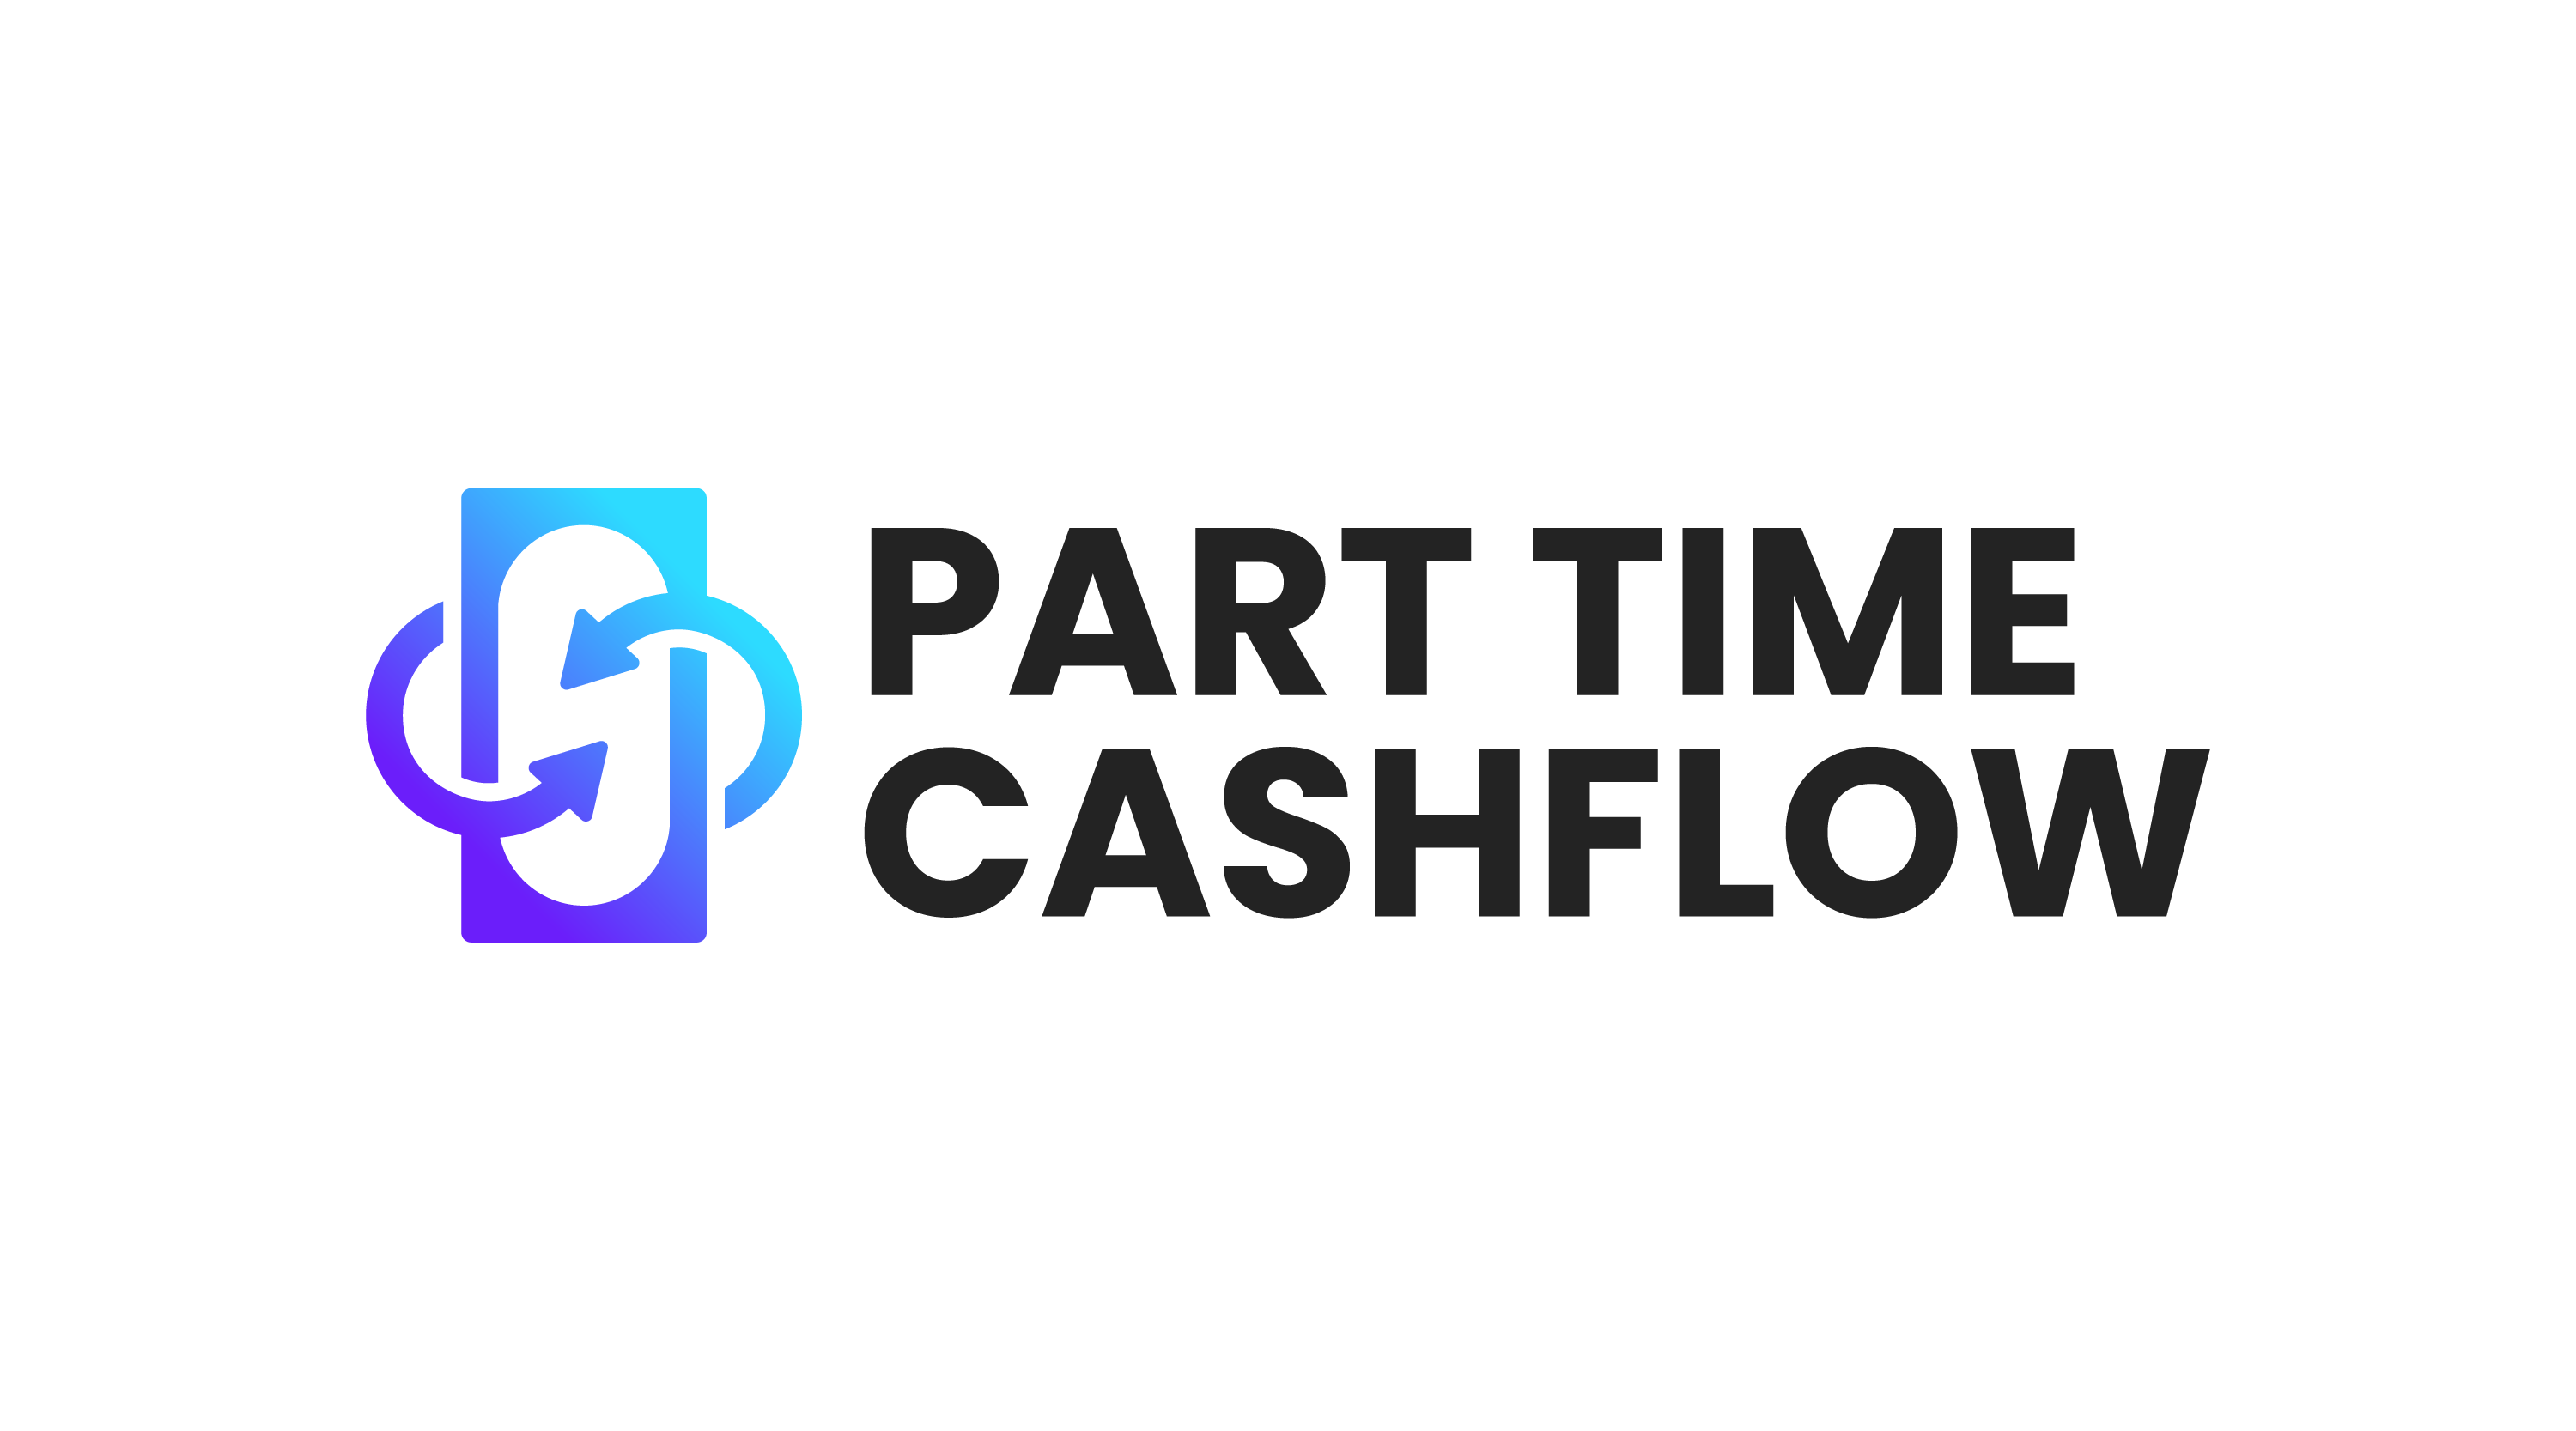 ParttimeCashflow.com